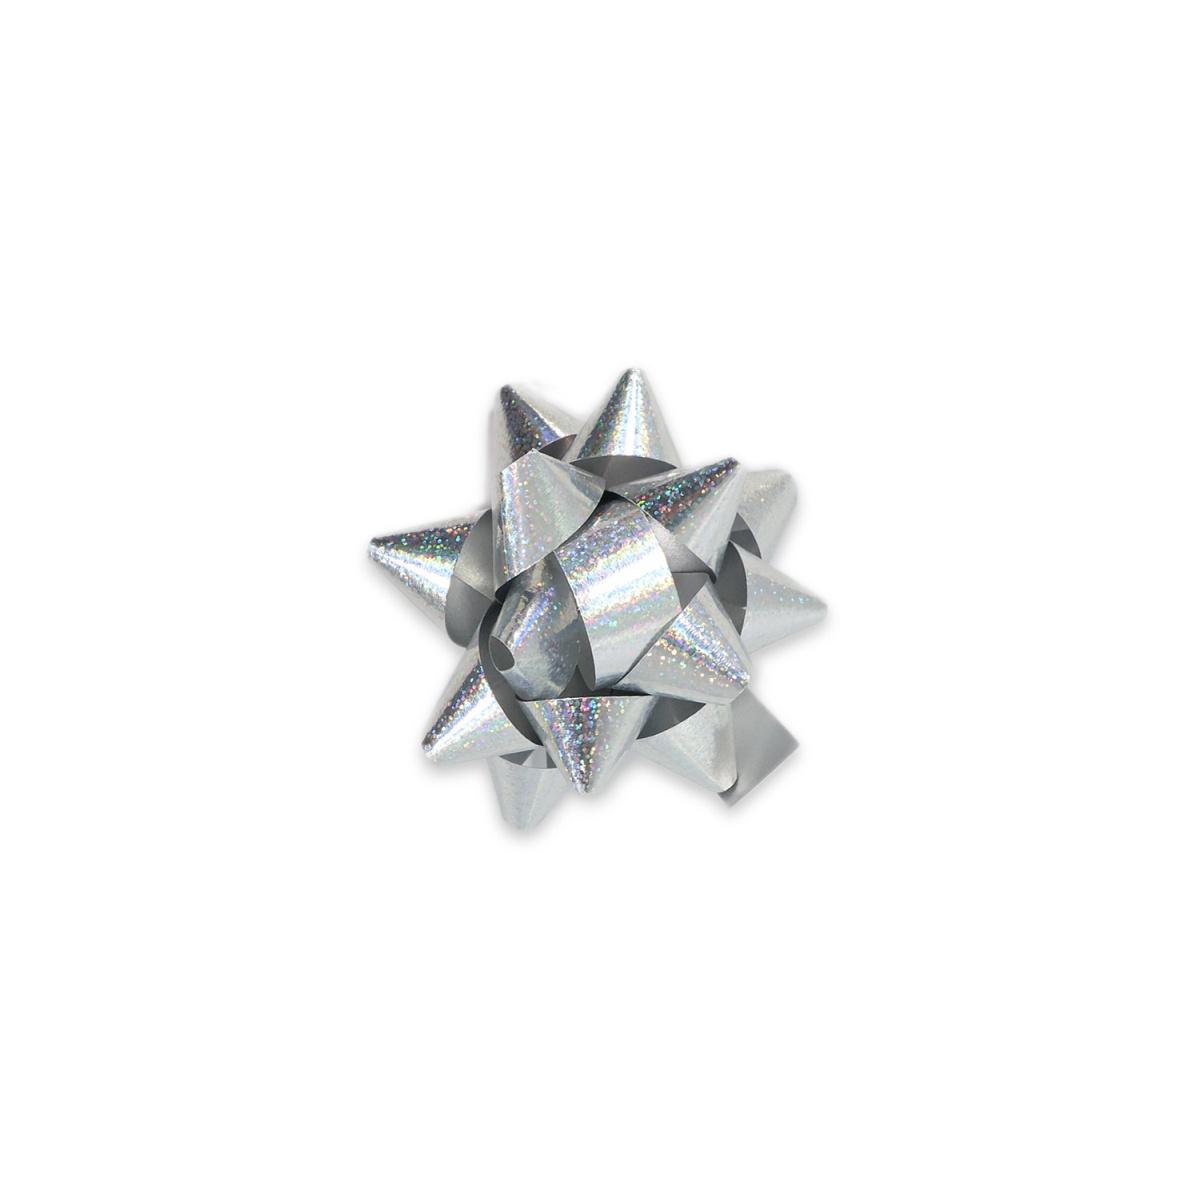 Coccarde adesive fantasia glitter argento mm. 10